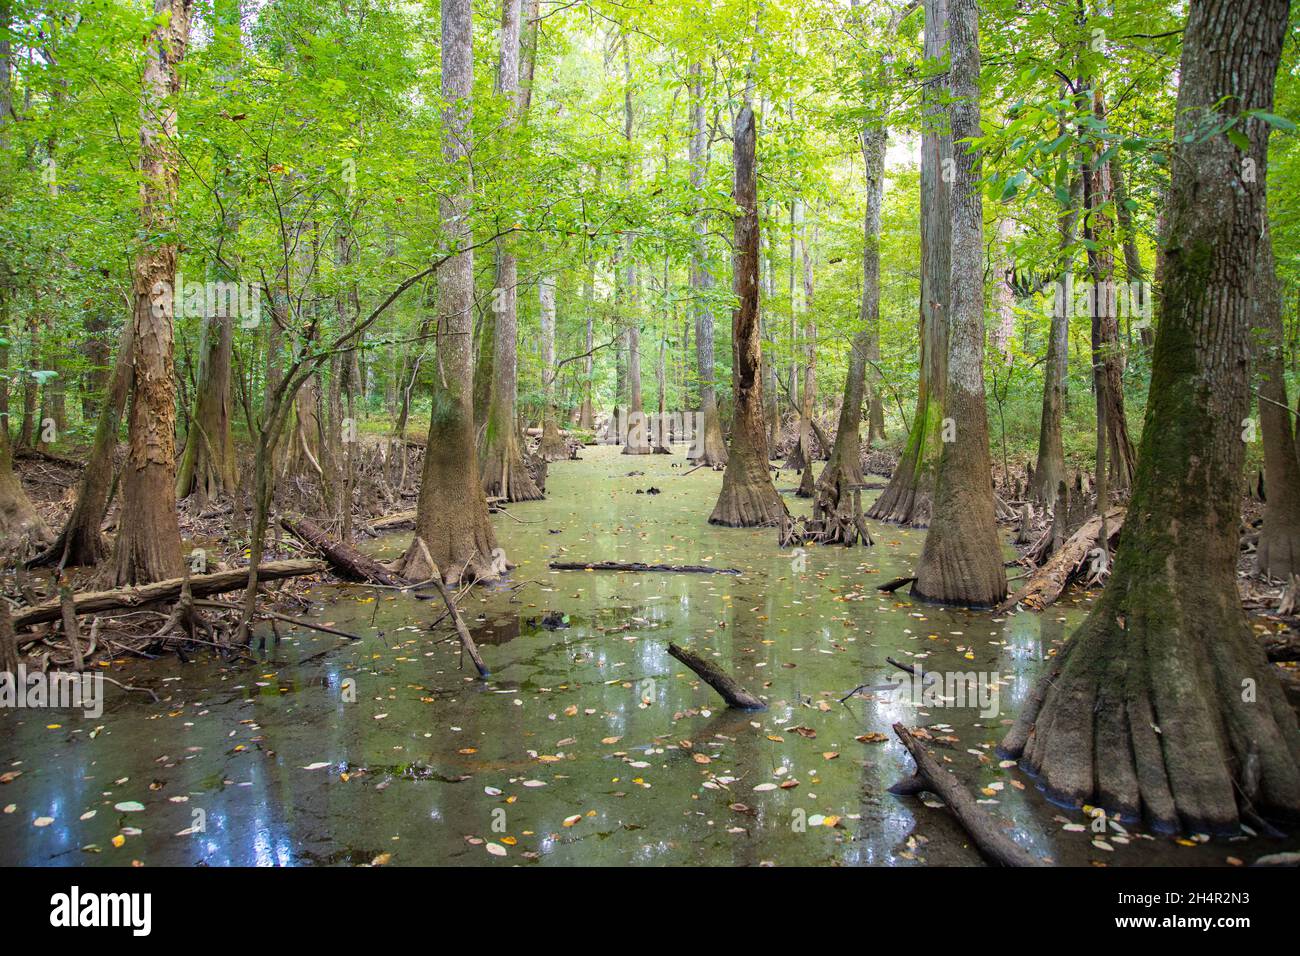 Marais et forêt de cyprès chauve et d'arbres d'eau tupelo dans le parc national de Congaree en Caroline du Sud, États-Unis. Banque D'Images